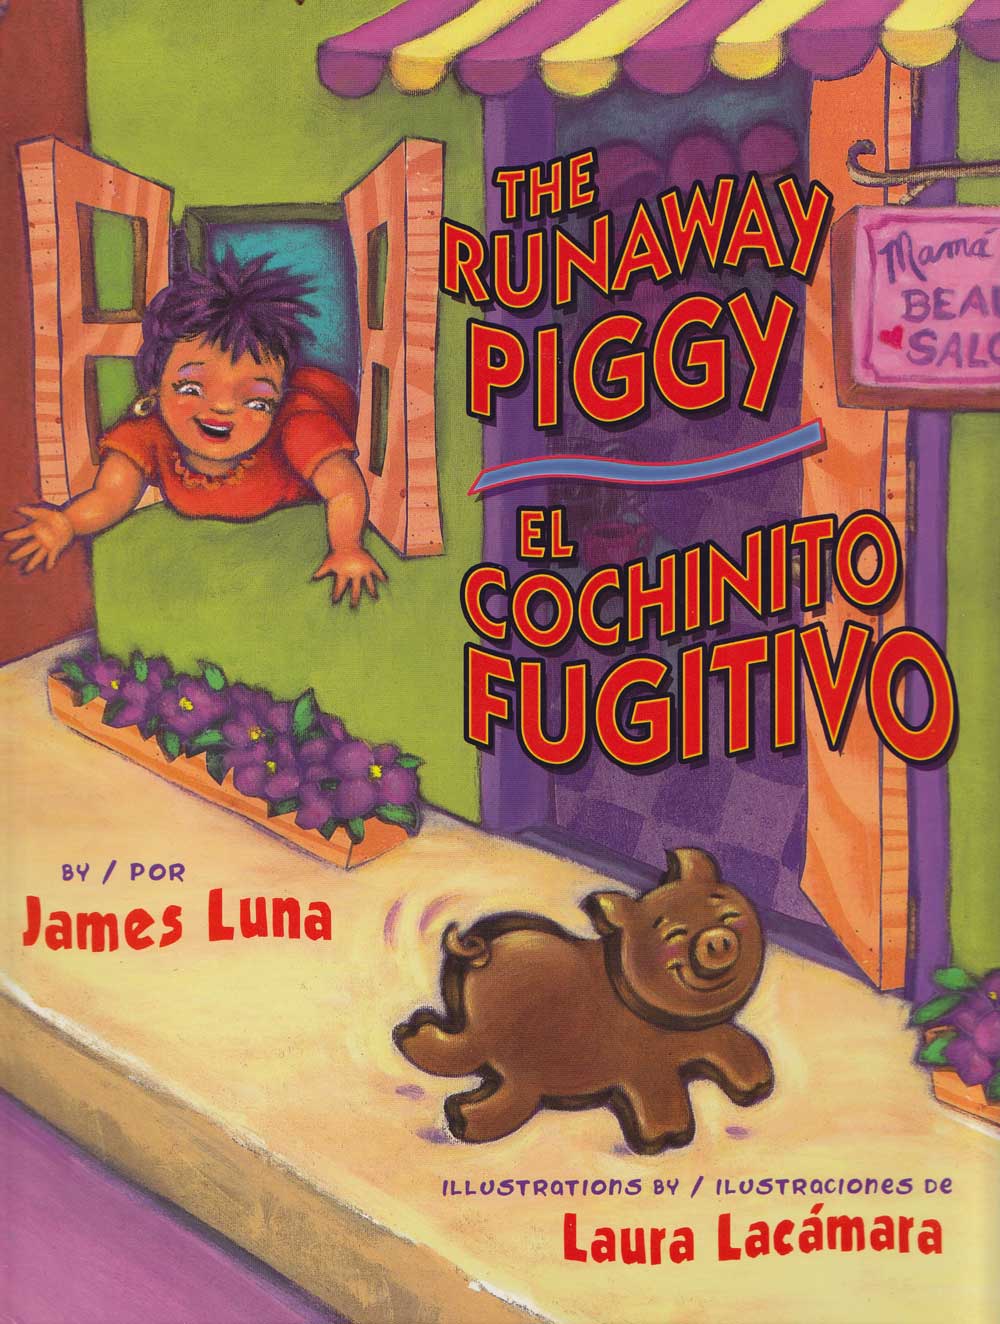 El cochinito fugitivo - The Runaway Piggy, Del Sol Books